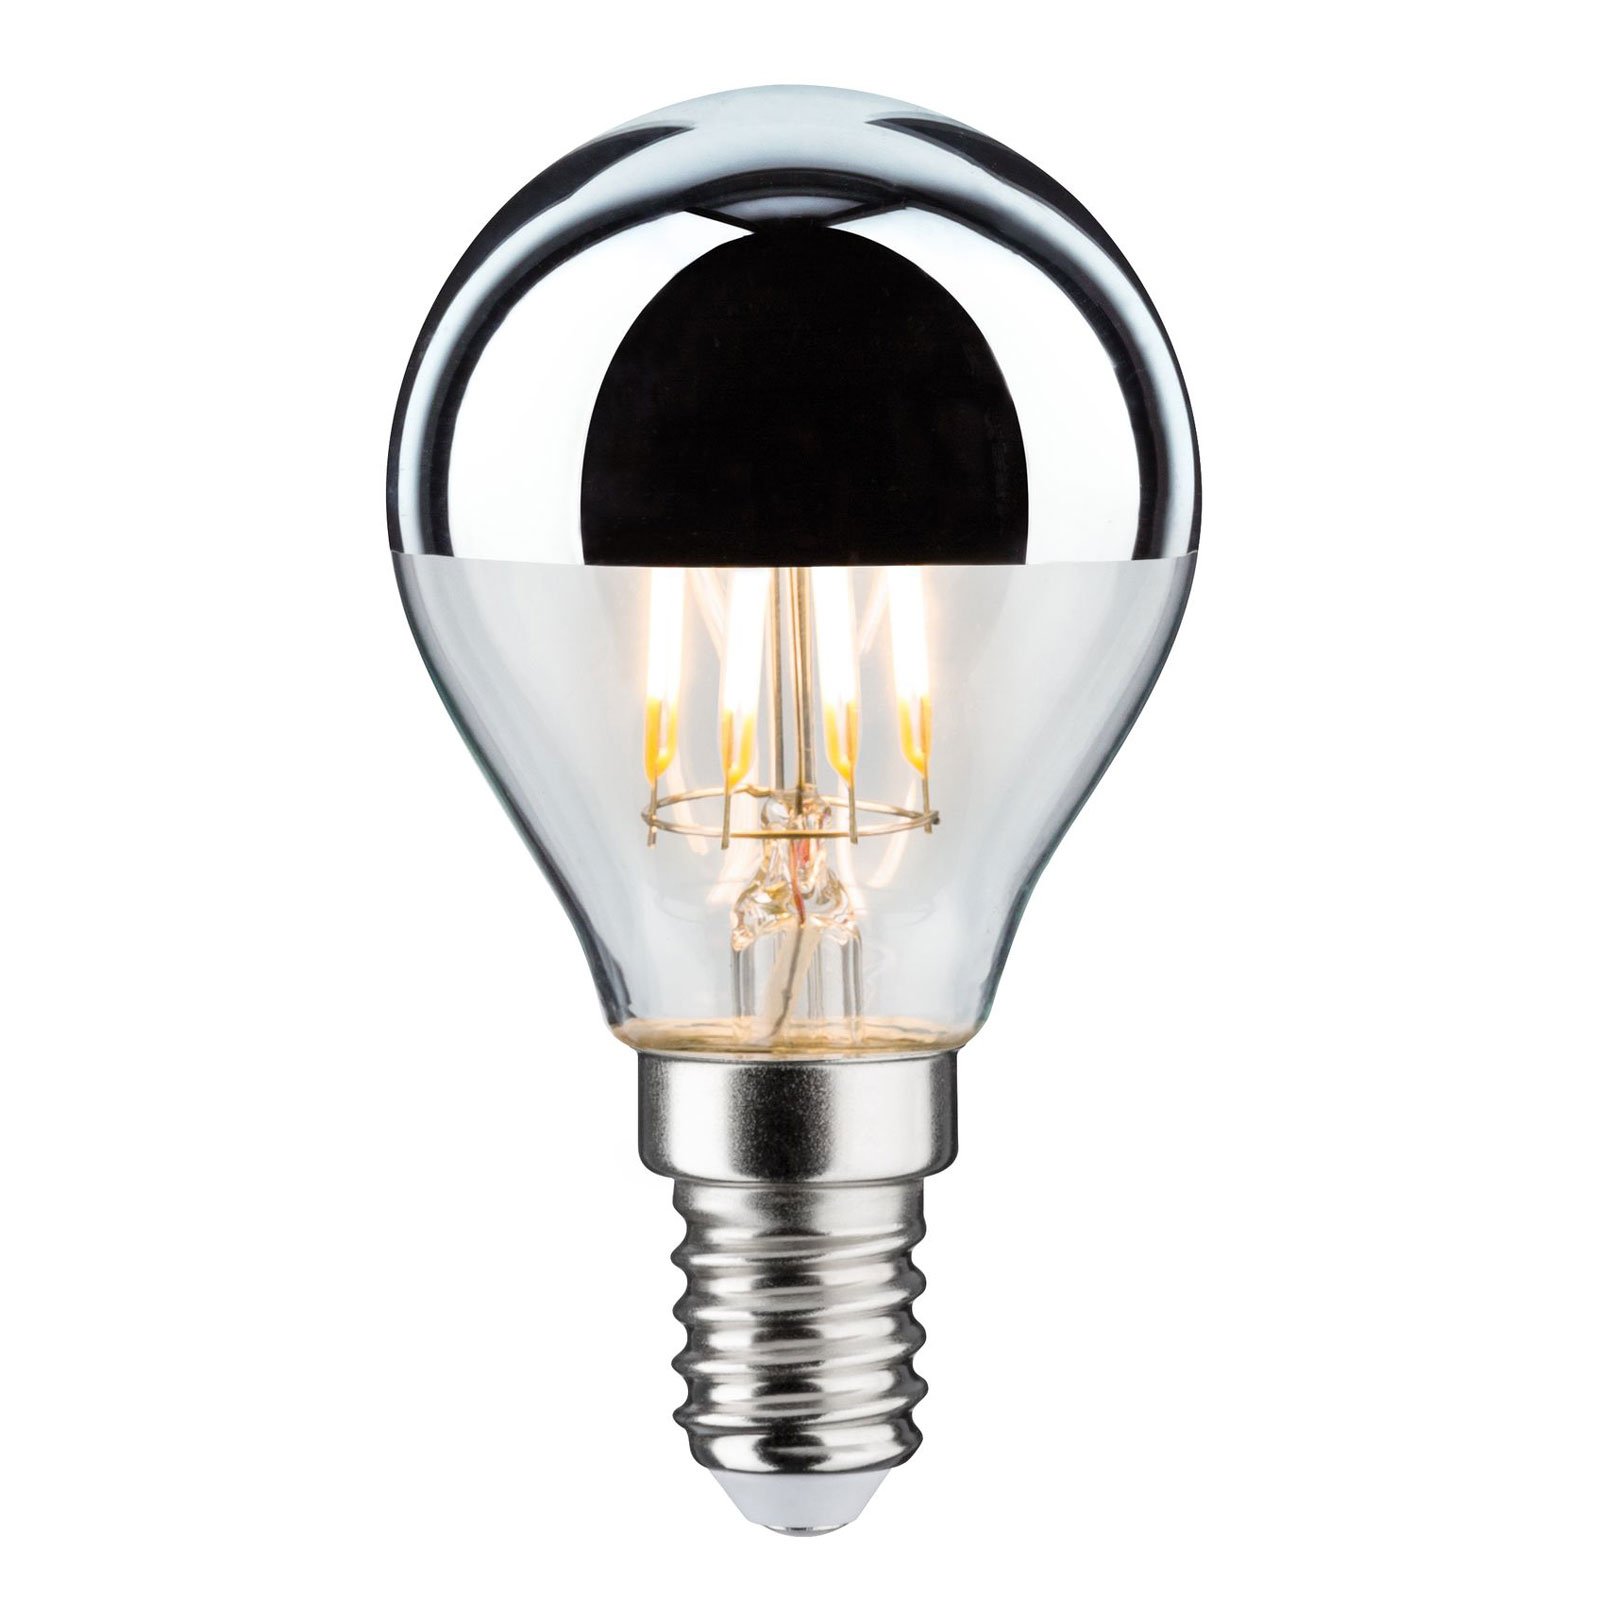 LED lamp E14 827 hoofdspiegel zilver 4.8W dimbaar